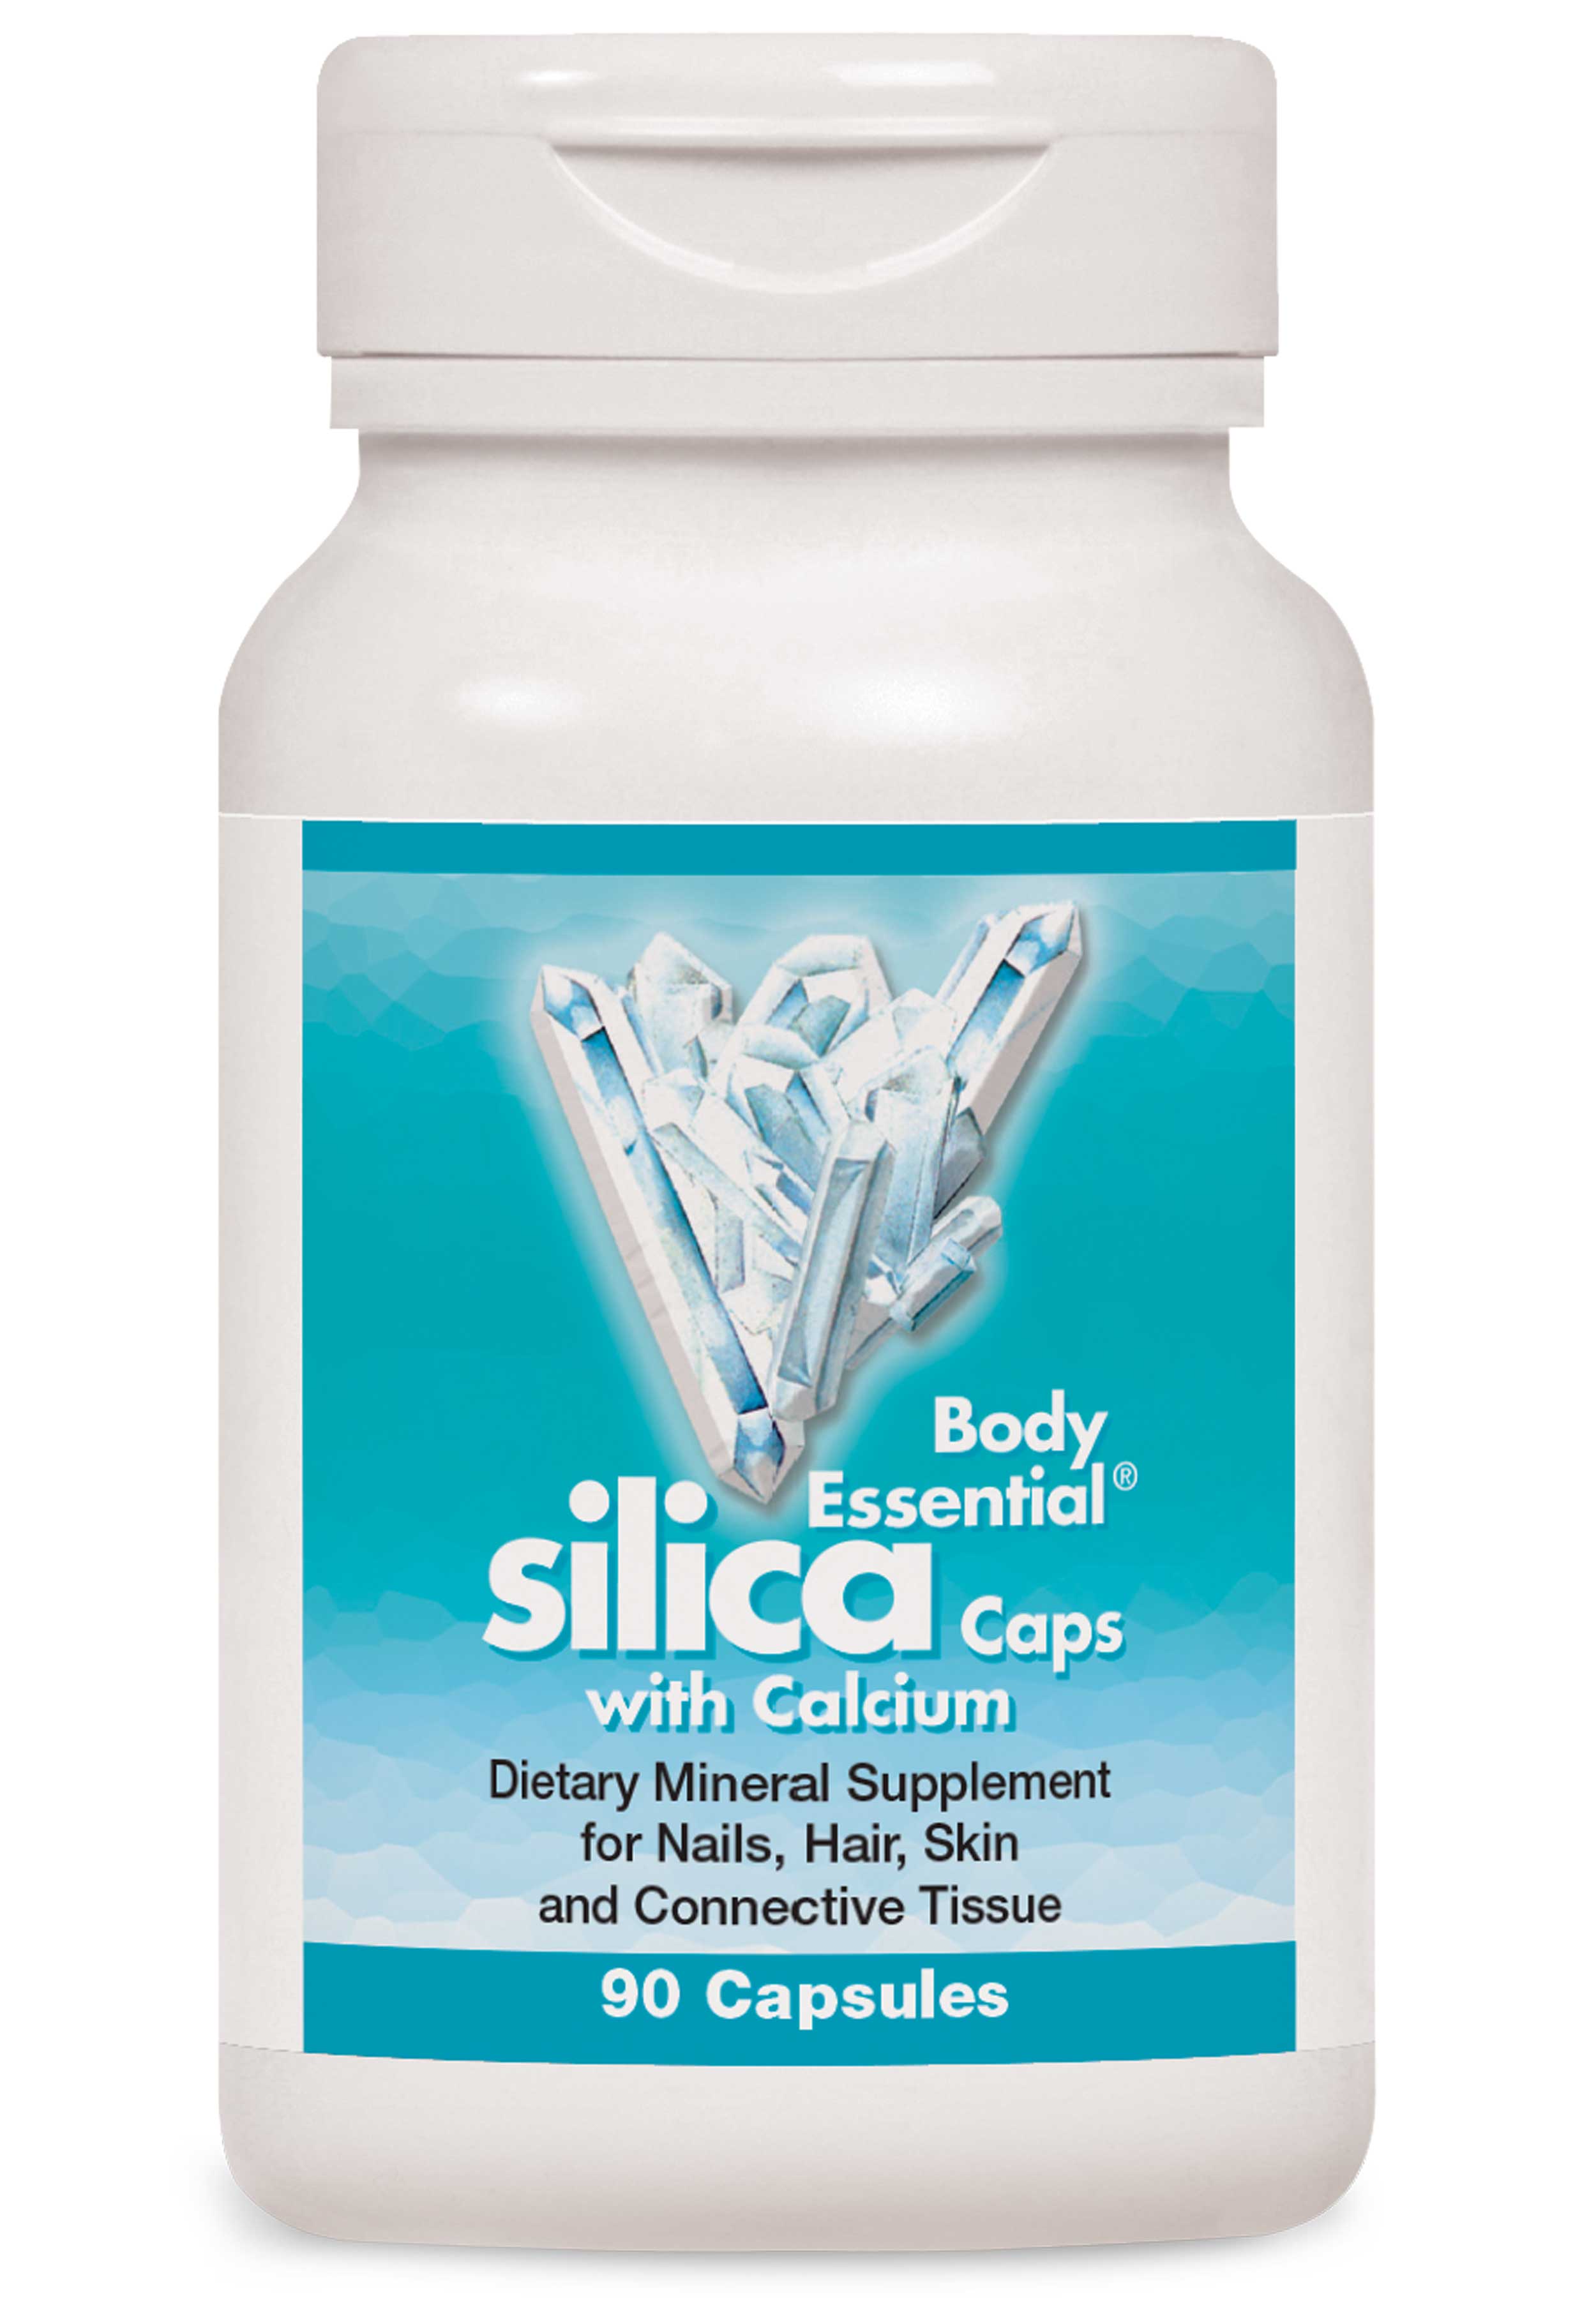 NatureWorks Body Essential Silica Caps with Calcium